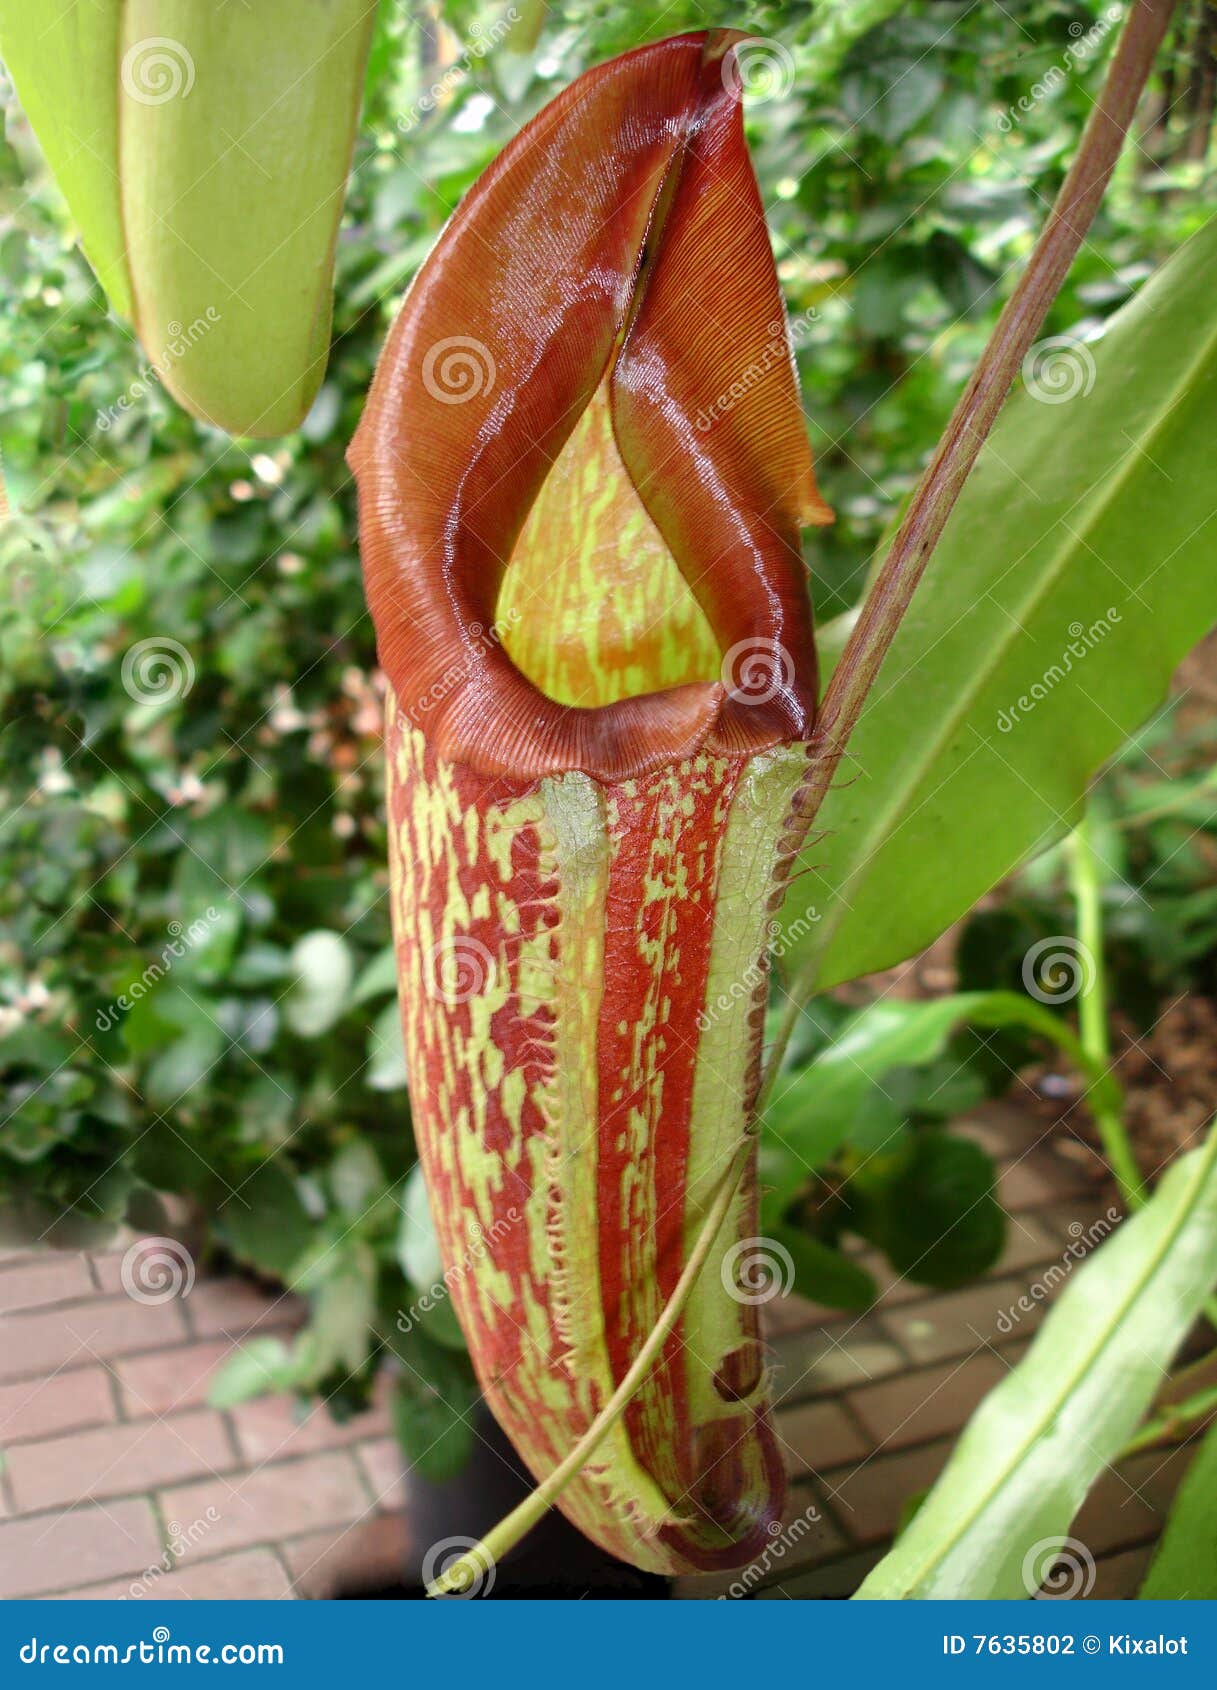 carnivorous pitcher plant closeup